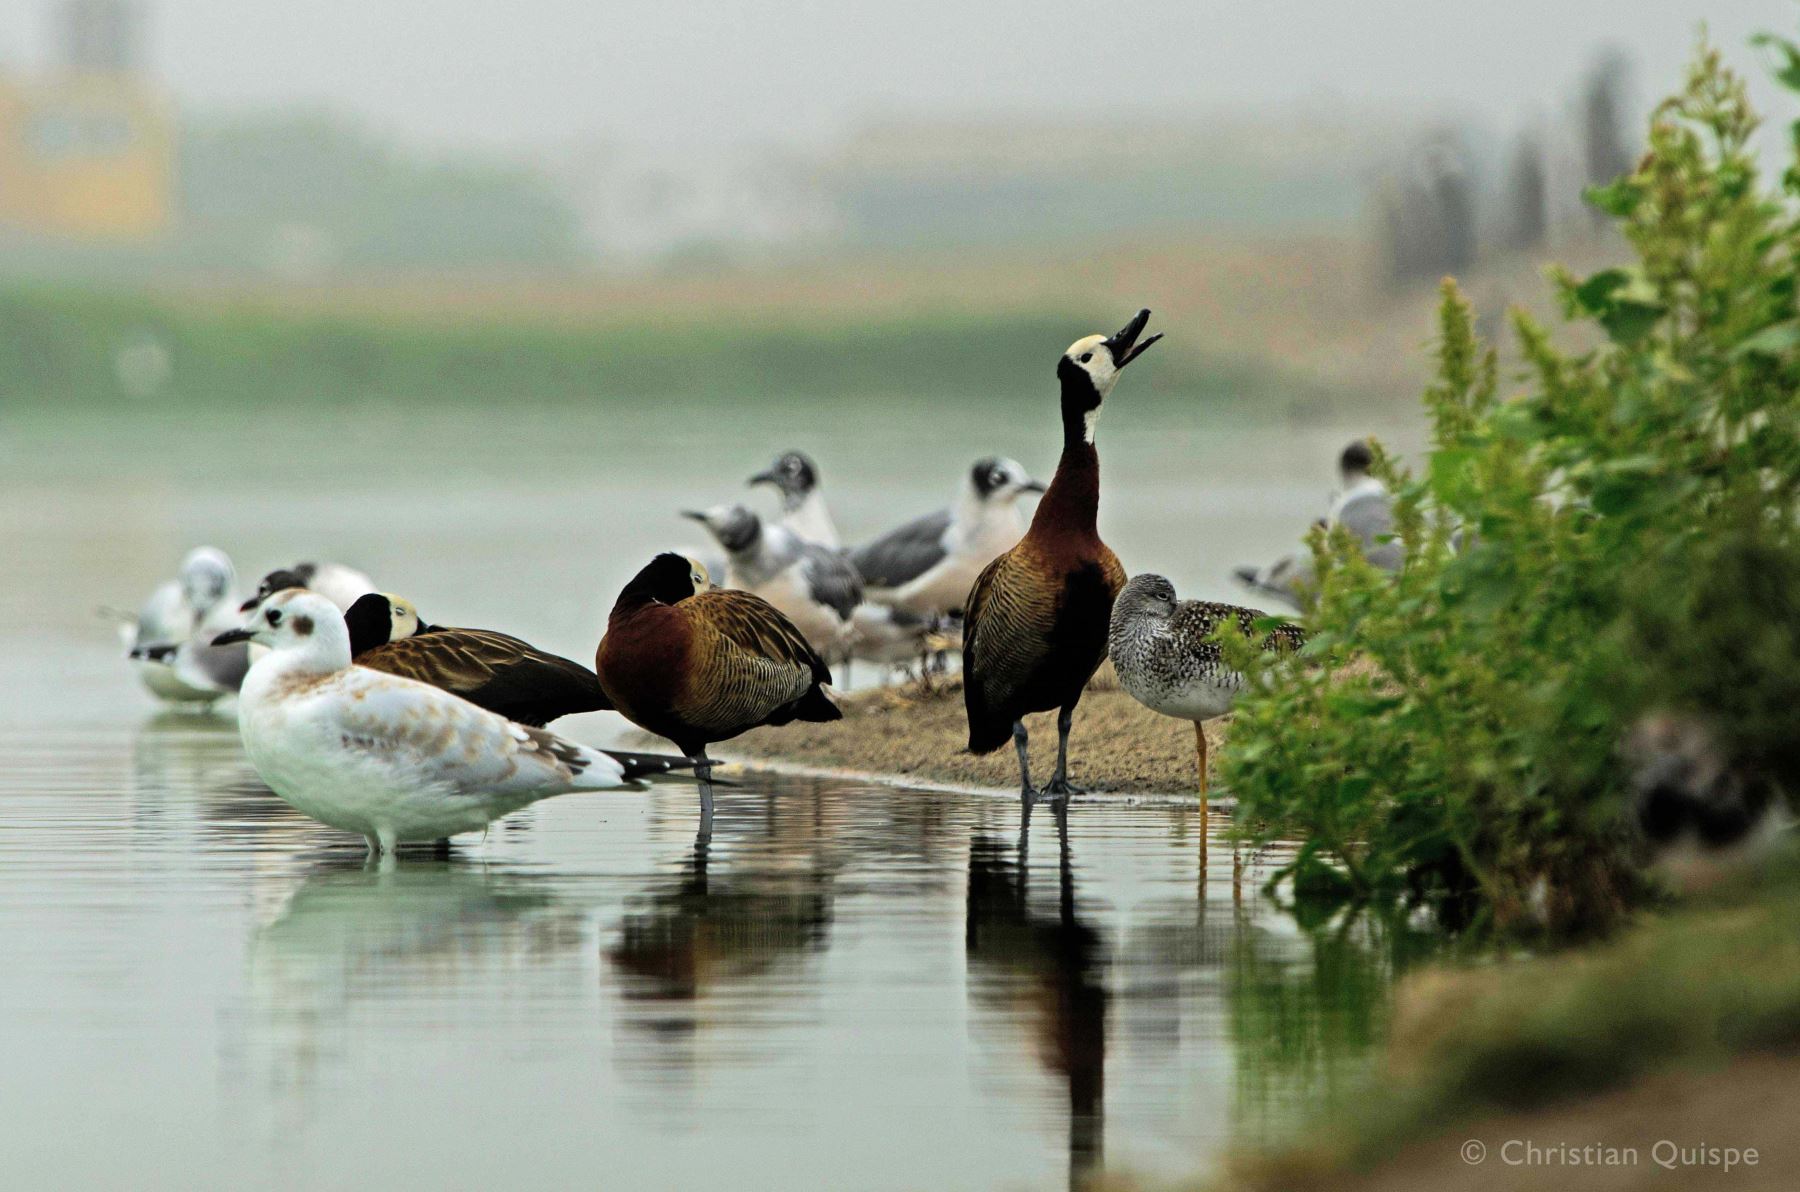 Pantanos de Villa, uno de los humedales ubicado en la ciudad de Lima. Alberga una gran diversidad de especies.